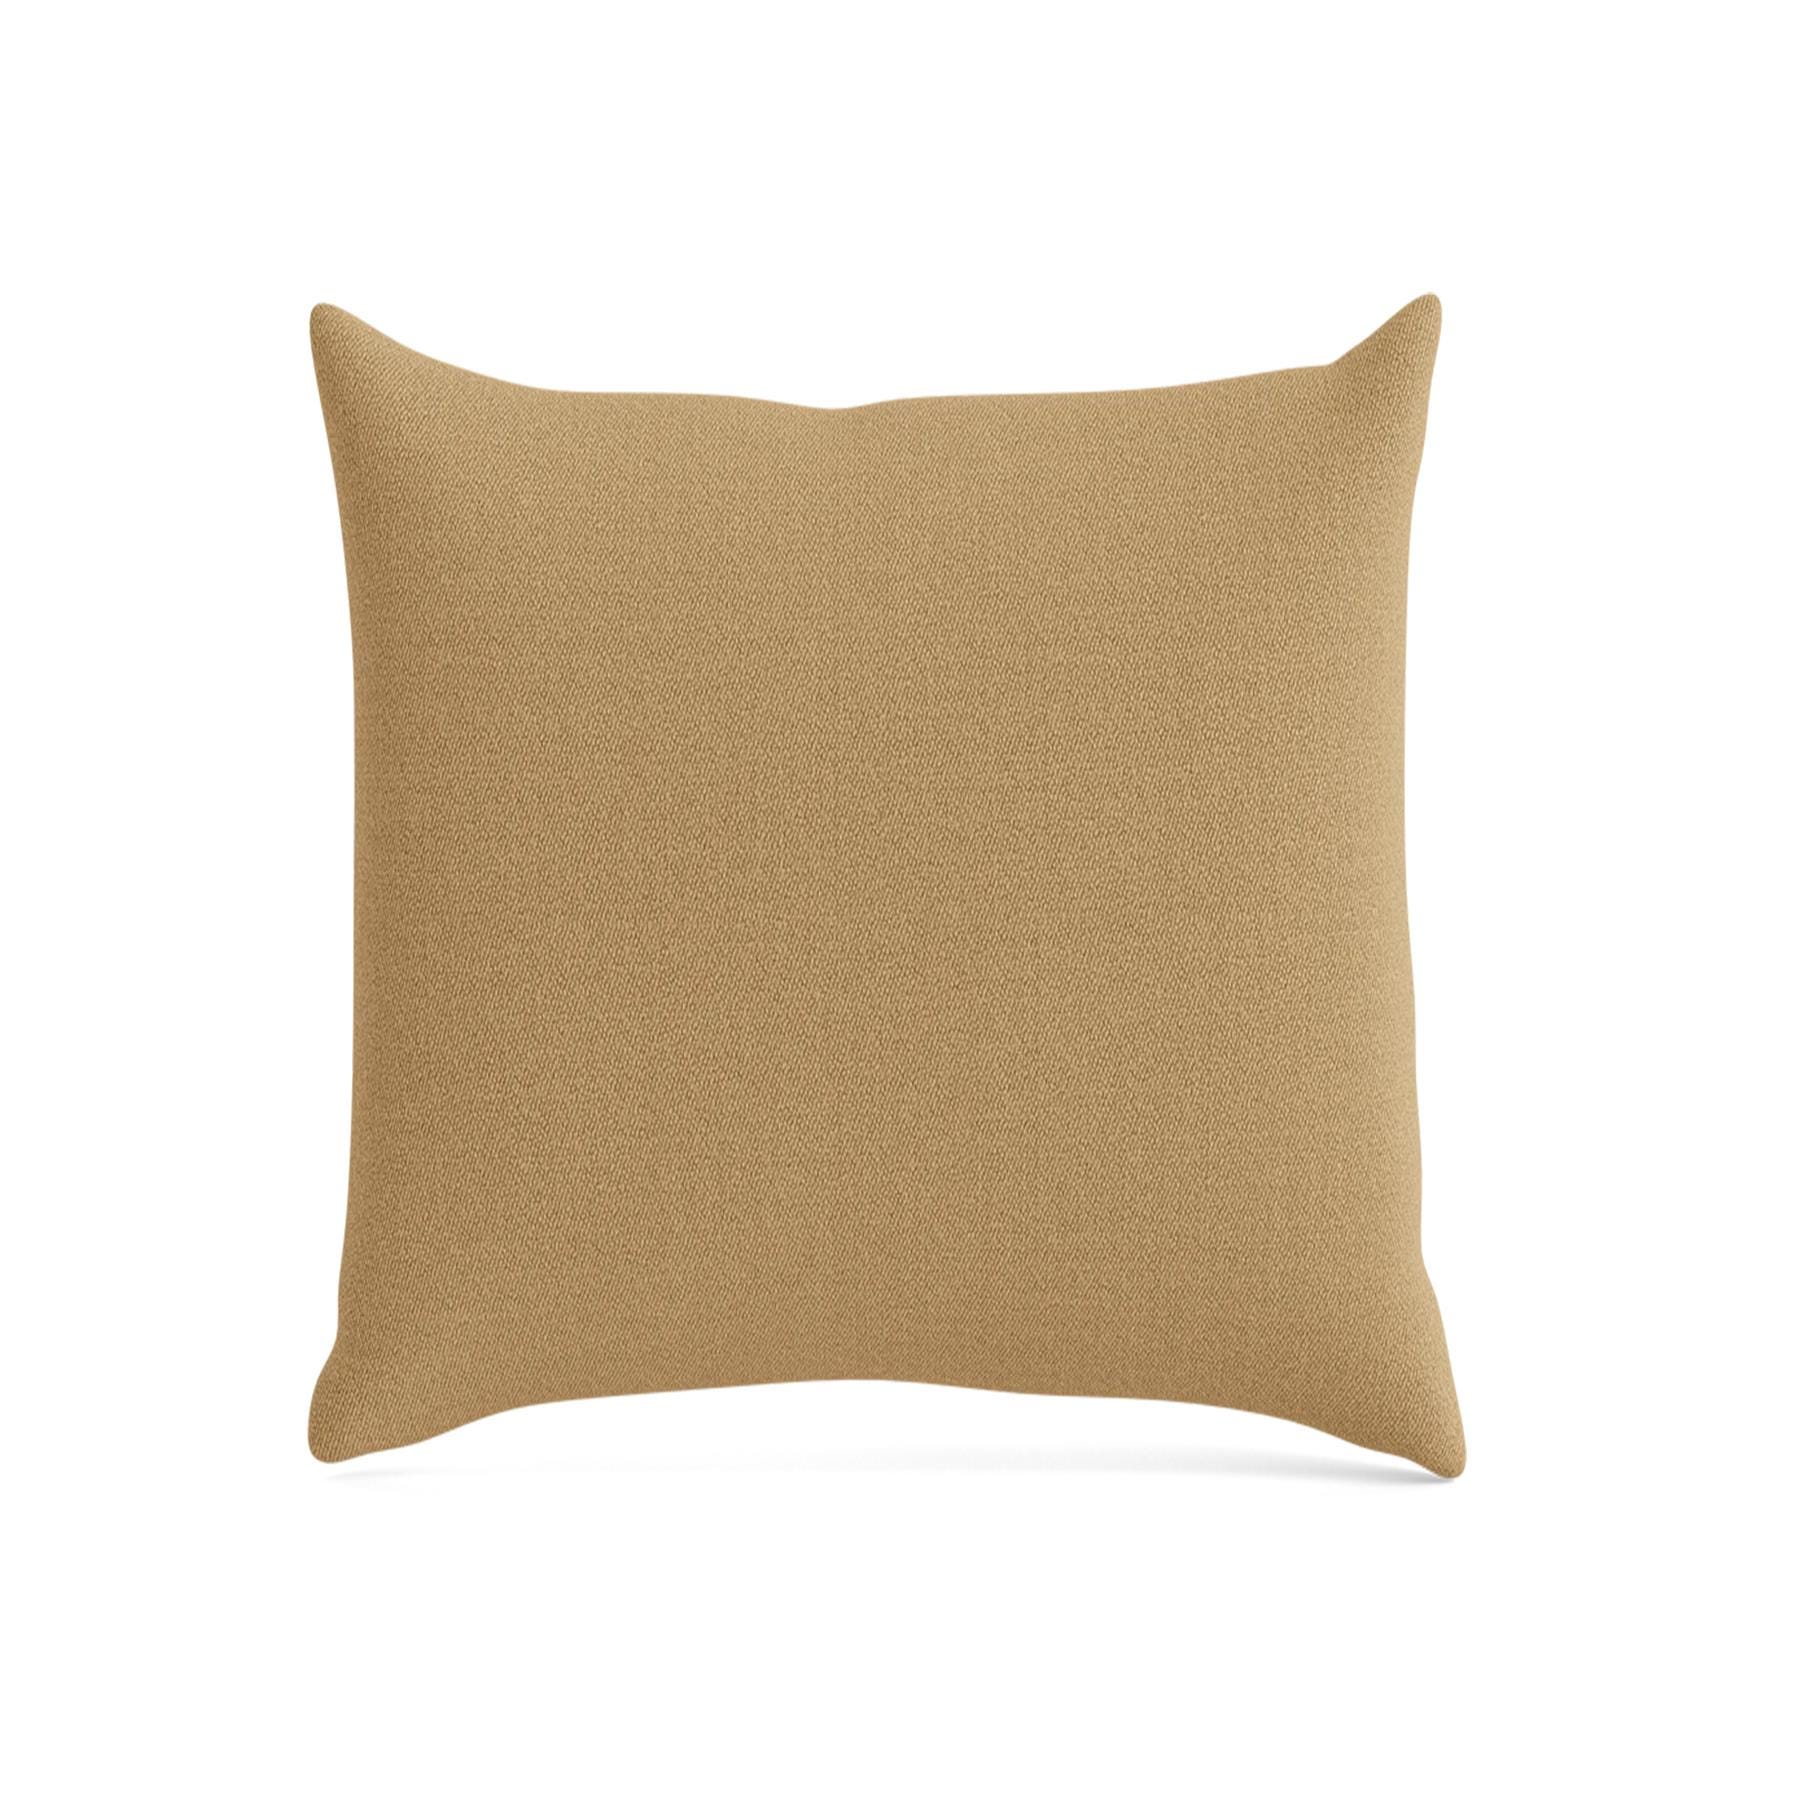 Make Nordic Pillow 50cmx50cm Vidar 333 Down And Fibers Brown